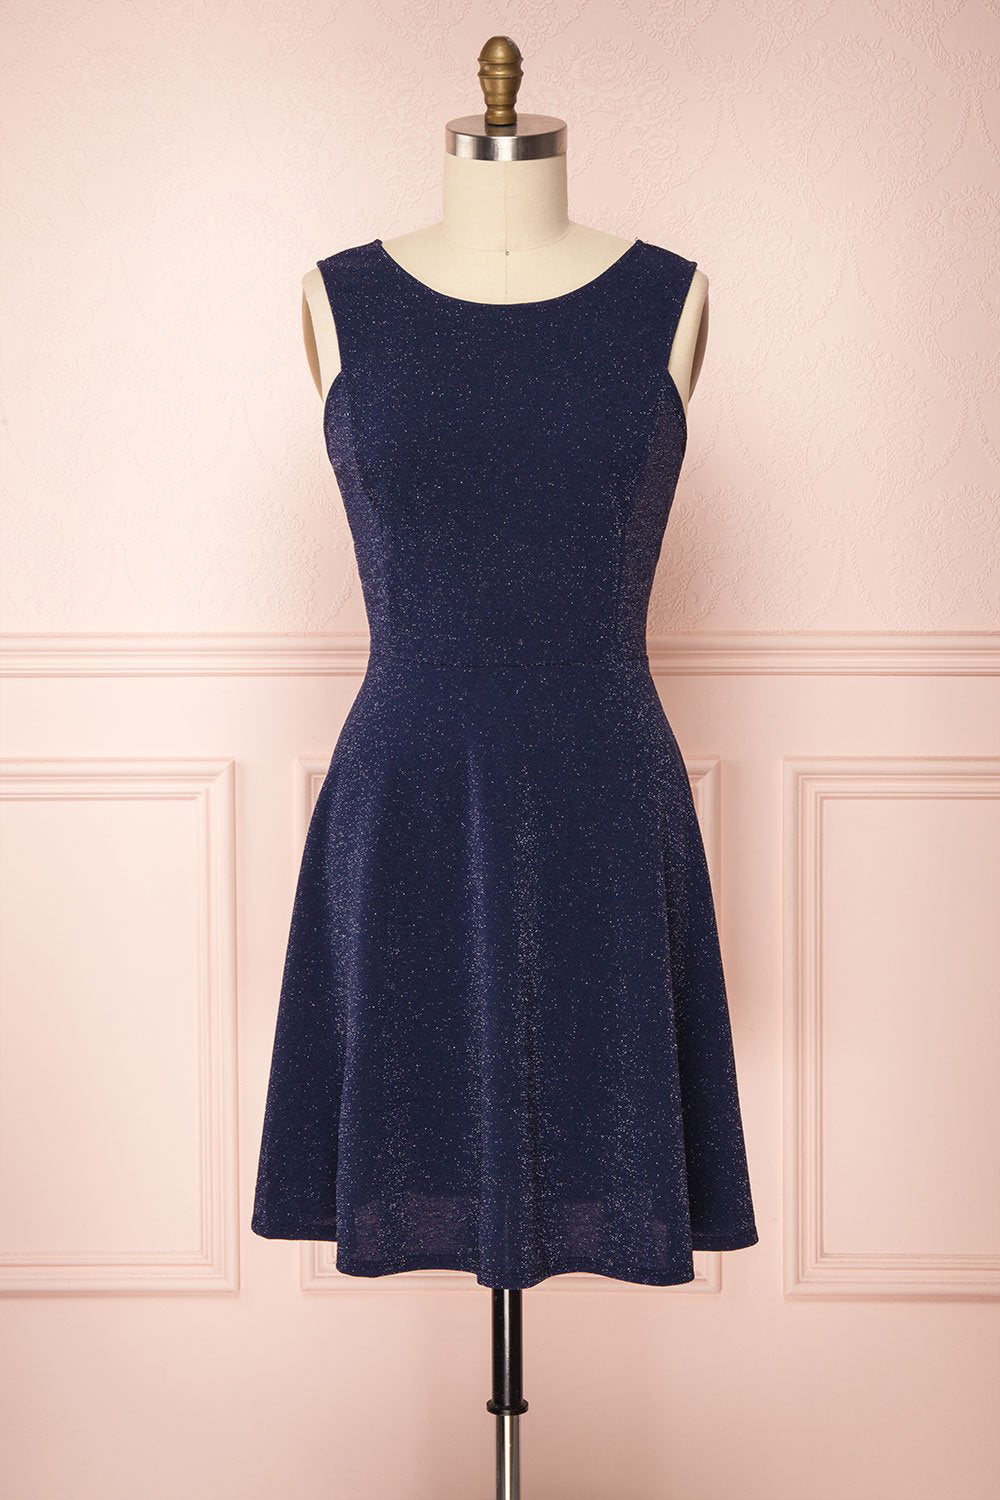 Elya Lapis Navy Blue Sparkly Plus Size Dress | Boutique 1861 front